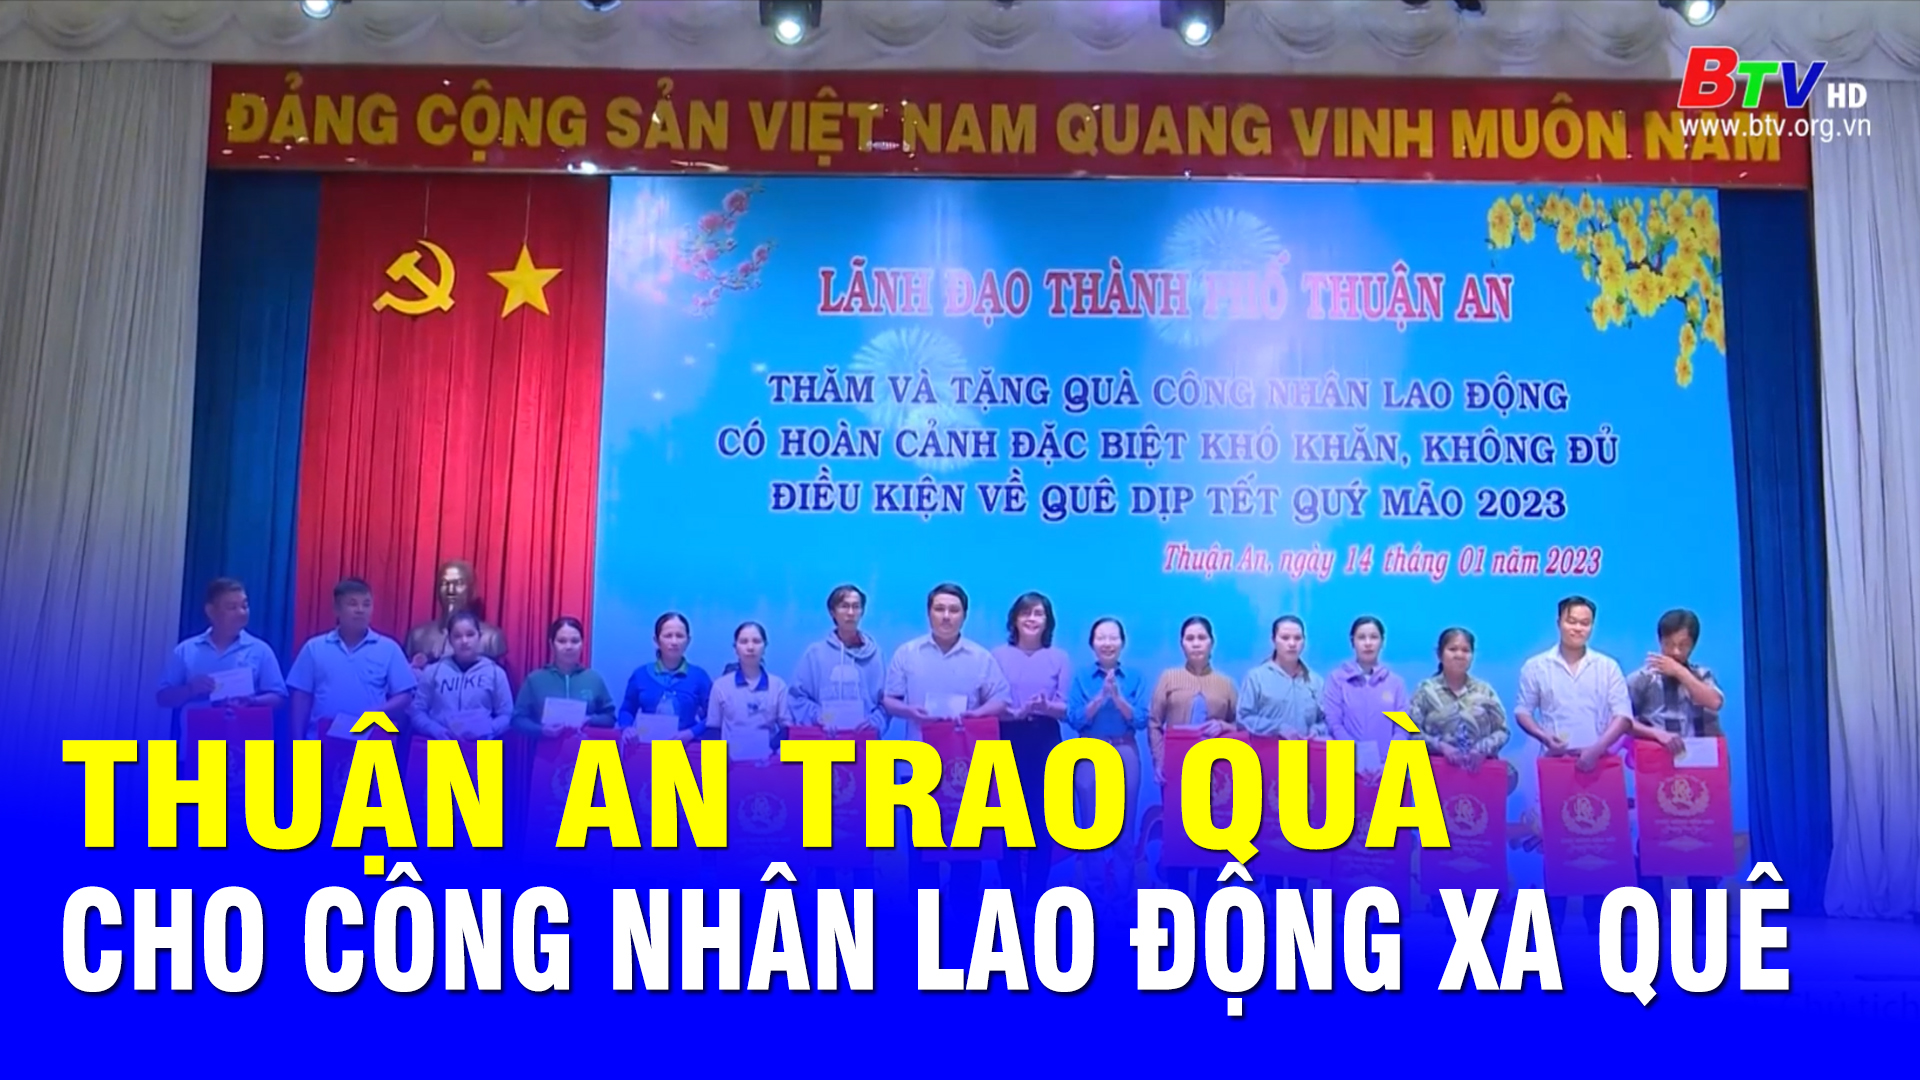 Thuận An trao quà cho công nhân lao động xa quê